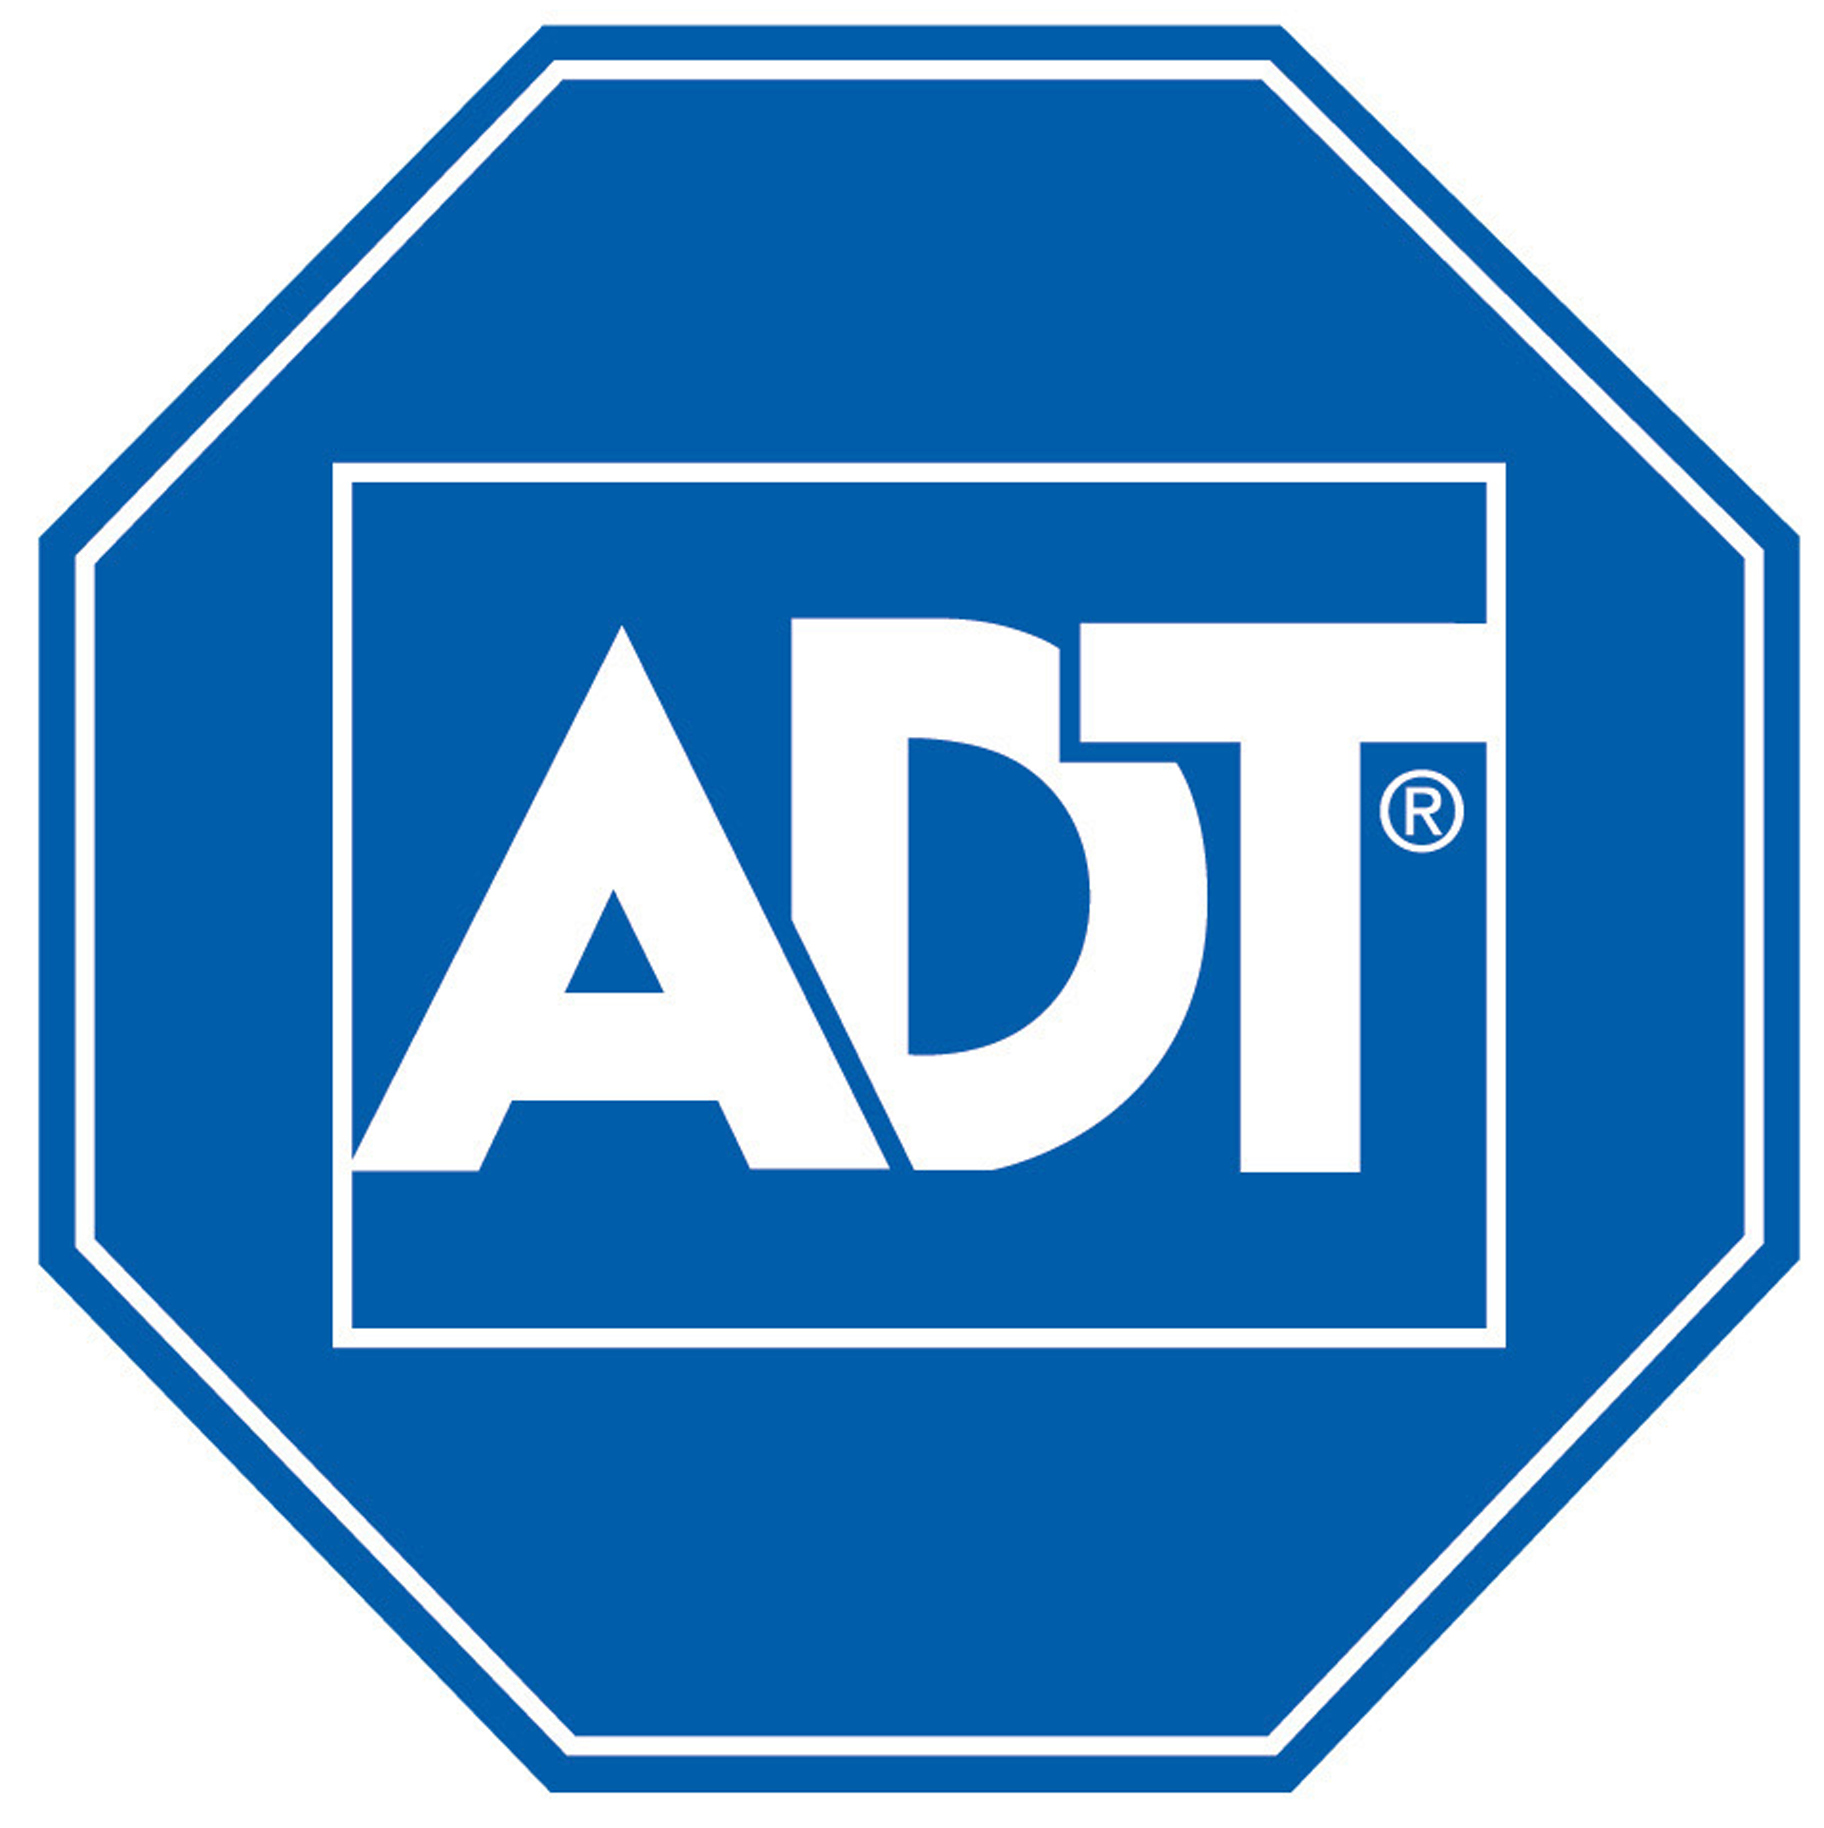 adt-logo.png 1,824×1,828 pixels | bck dr t plyvr & kbdl & GQ | Pinter…